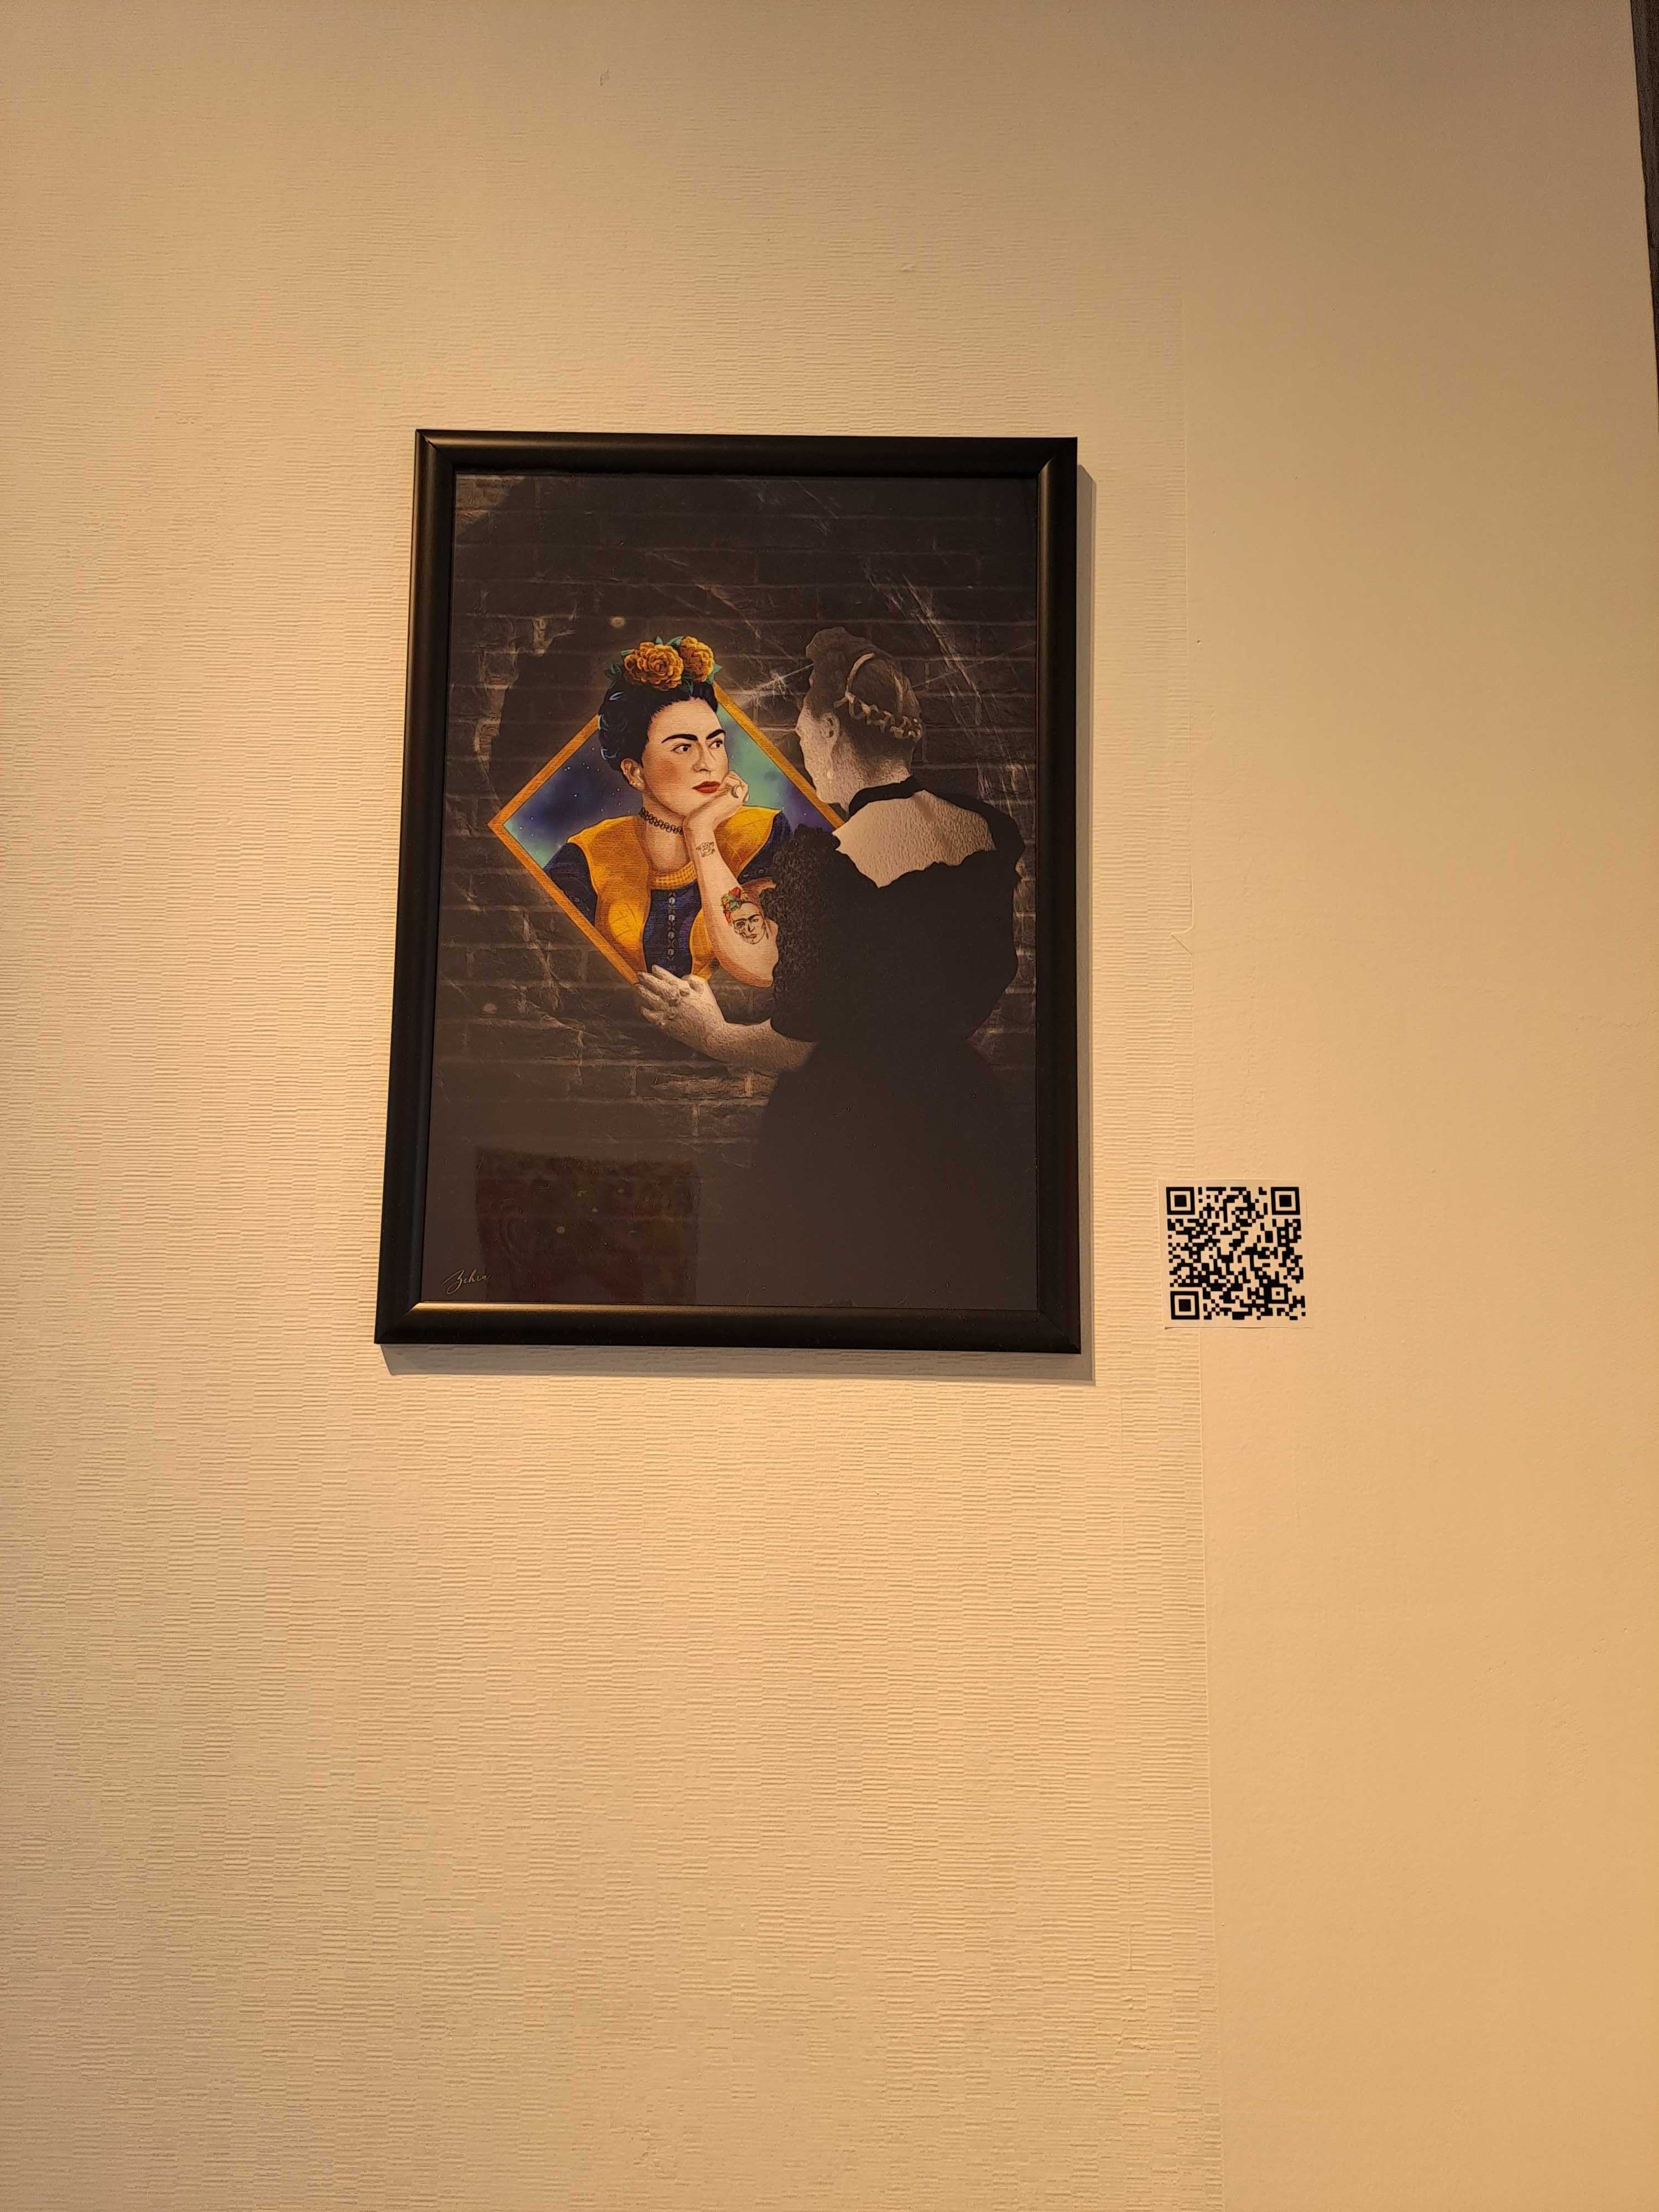 'İçimizdeki Frida' ('The Frida Inside Us'), Zehra Bayır, pencetakan digital, 29,7 kali 42 sentimeter.  (Foto oleh rem Yaşar)